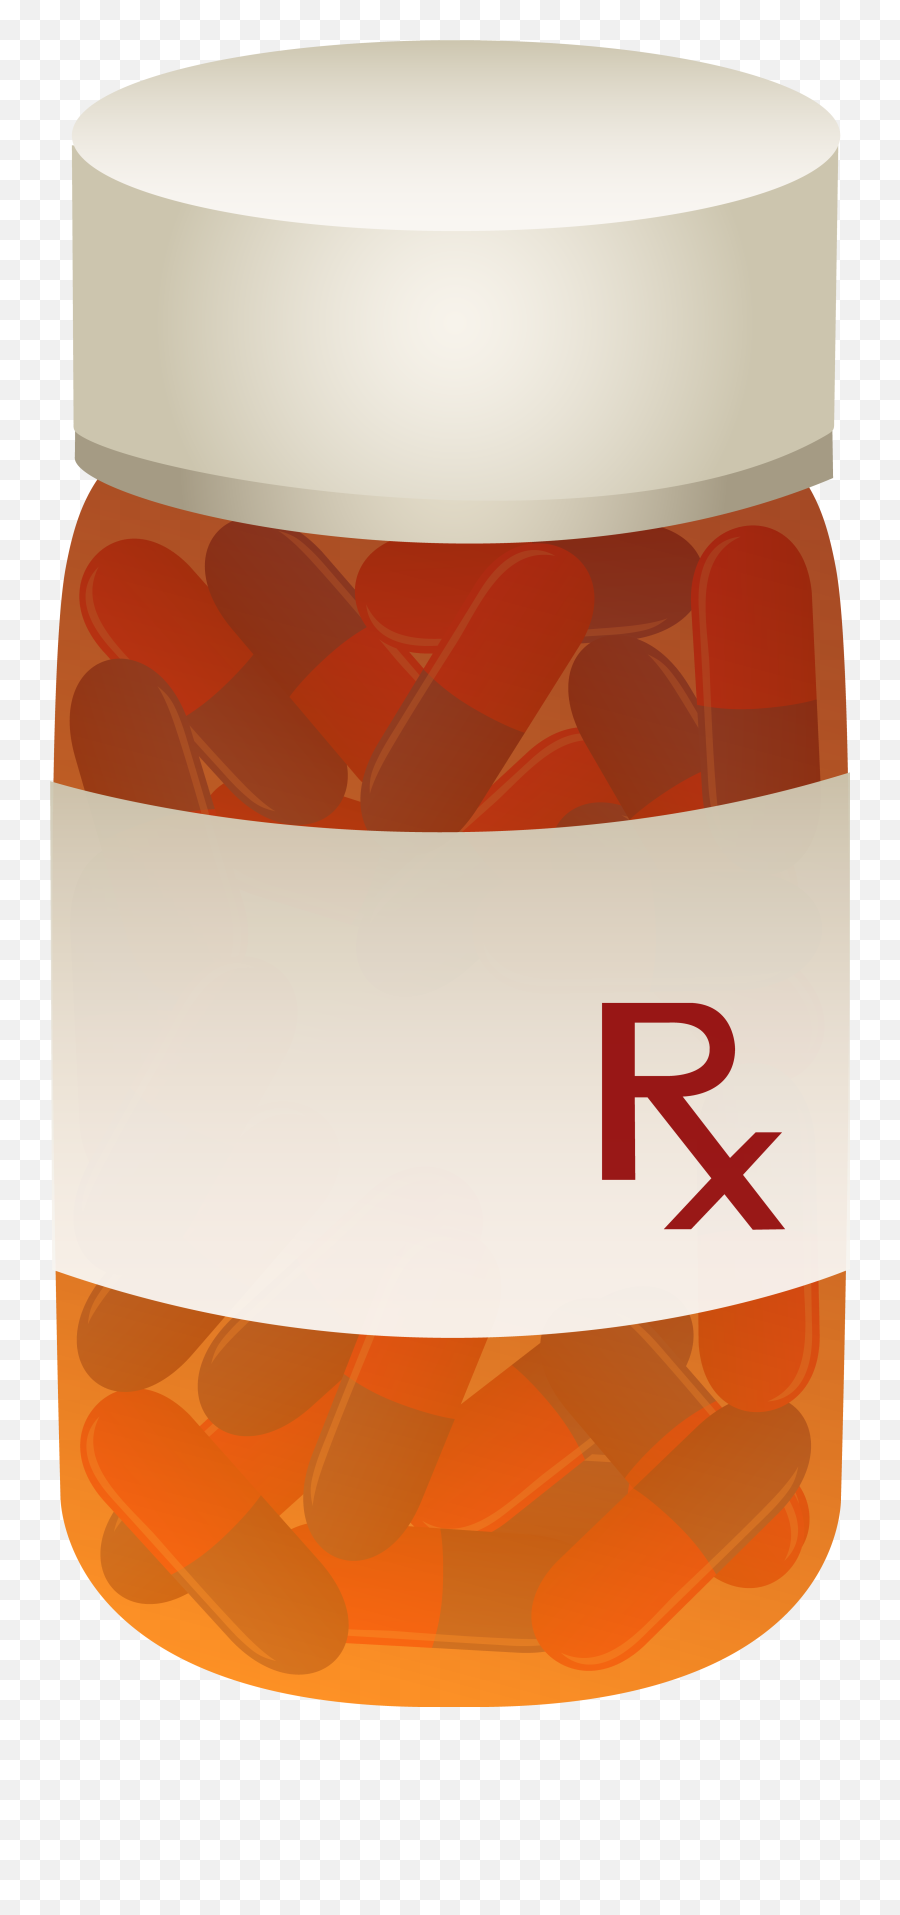 Download Pills Clipart Rx Bottle - Clip Art Png Image With Vector Pill Bottle Clipart,Pill Bottle Transparent Background